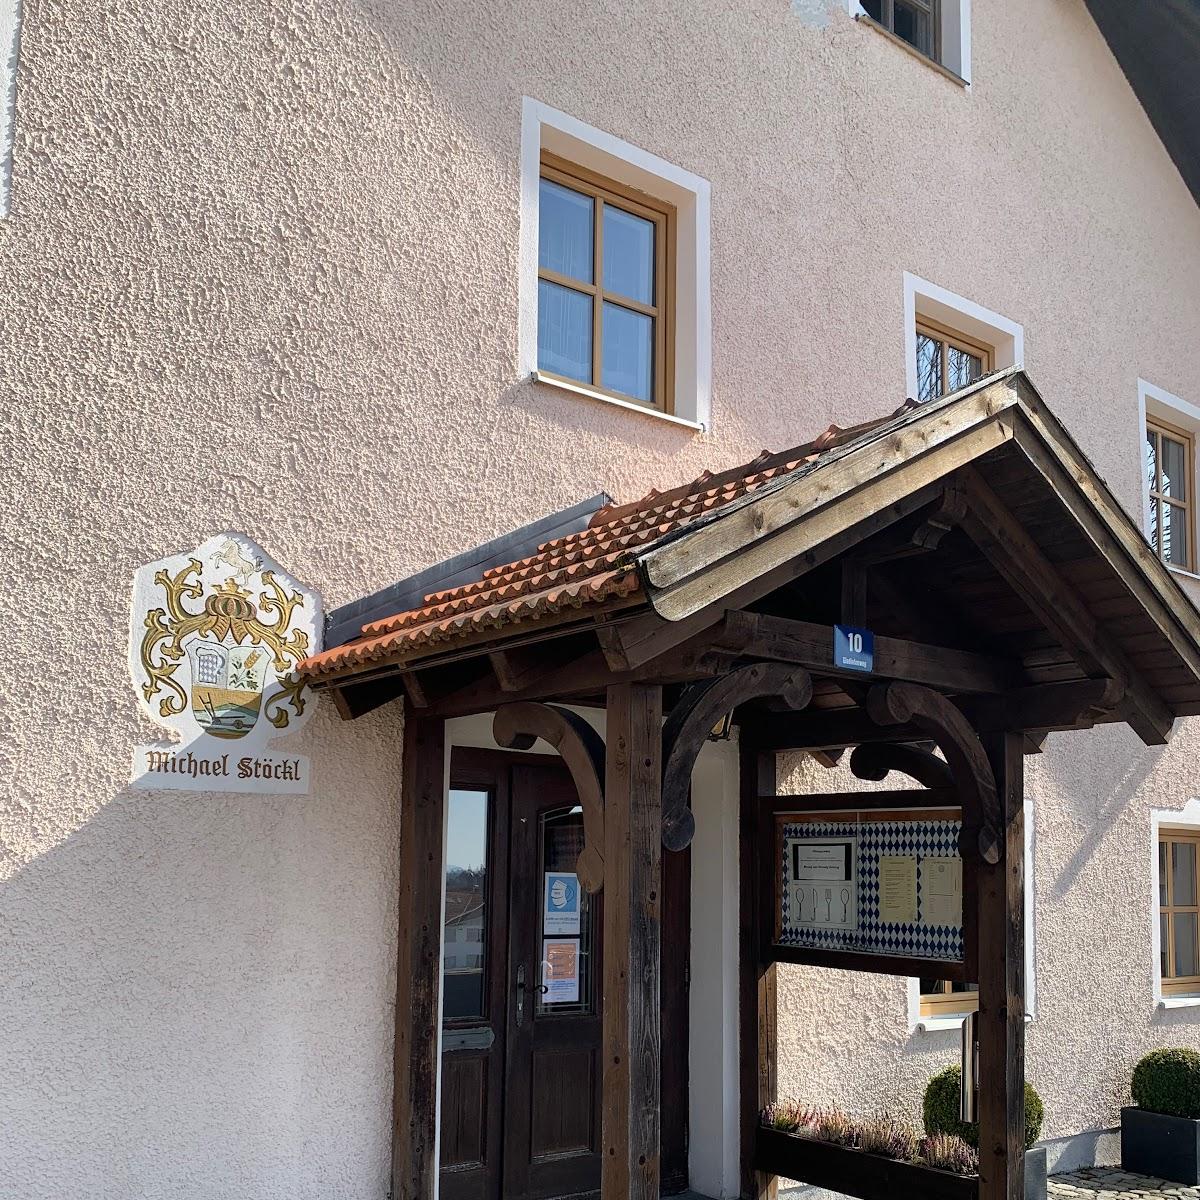 Restaurant "Gasthaus zum Stausee" in Grafenau